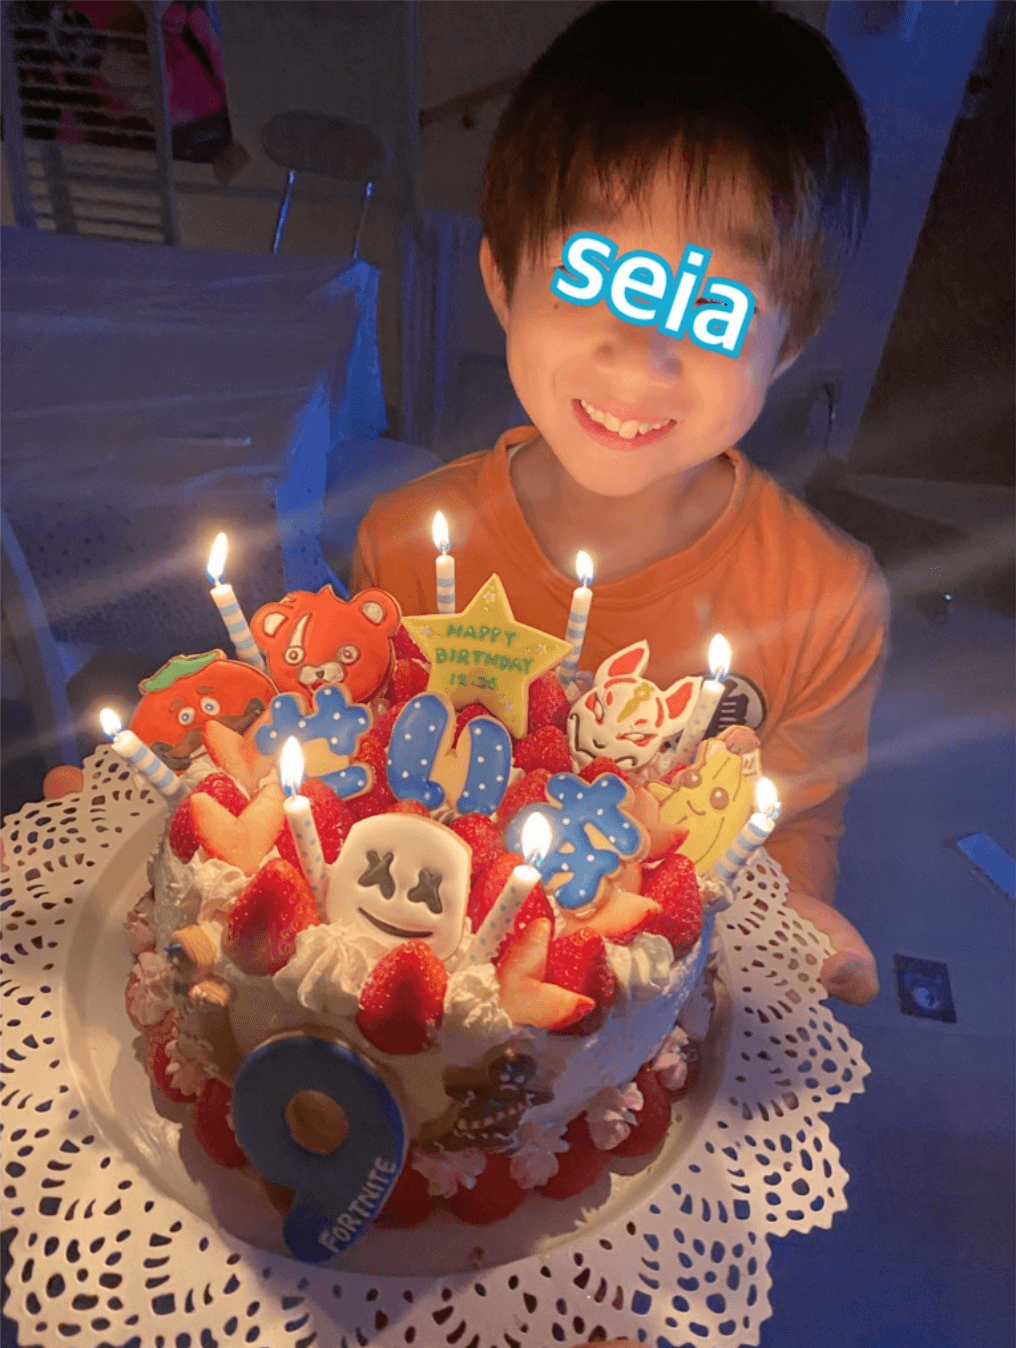 辻希美 手作り キャラ誕生日ケーキ を持つ杉浦太陽と長男の写真公開 頑張って作った E Talentbank Co Ltd